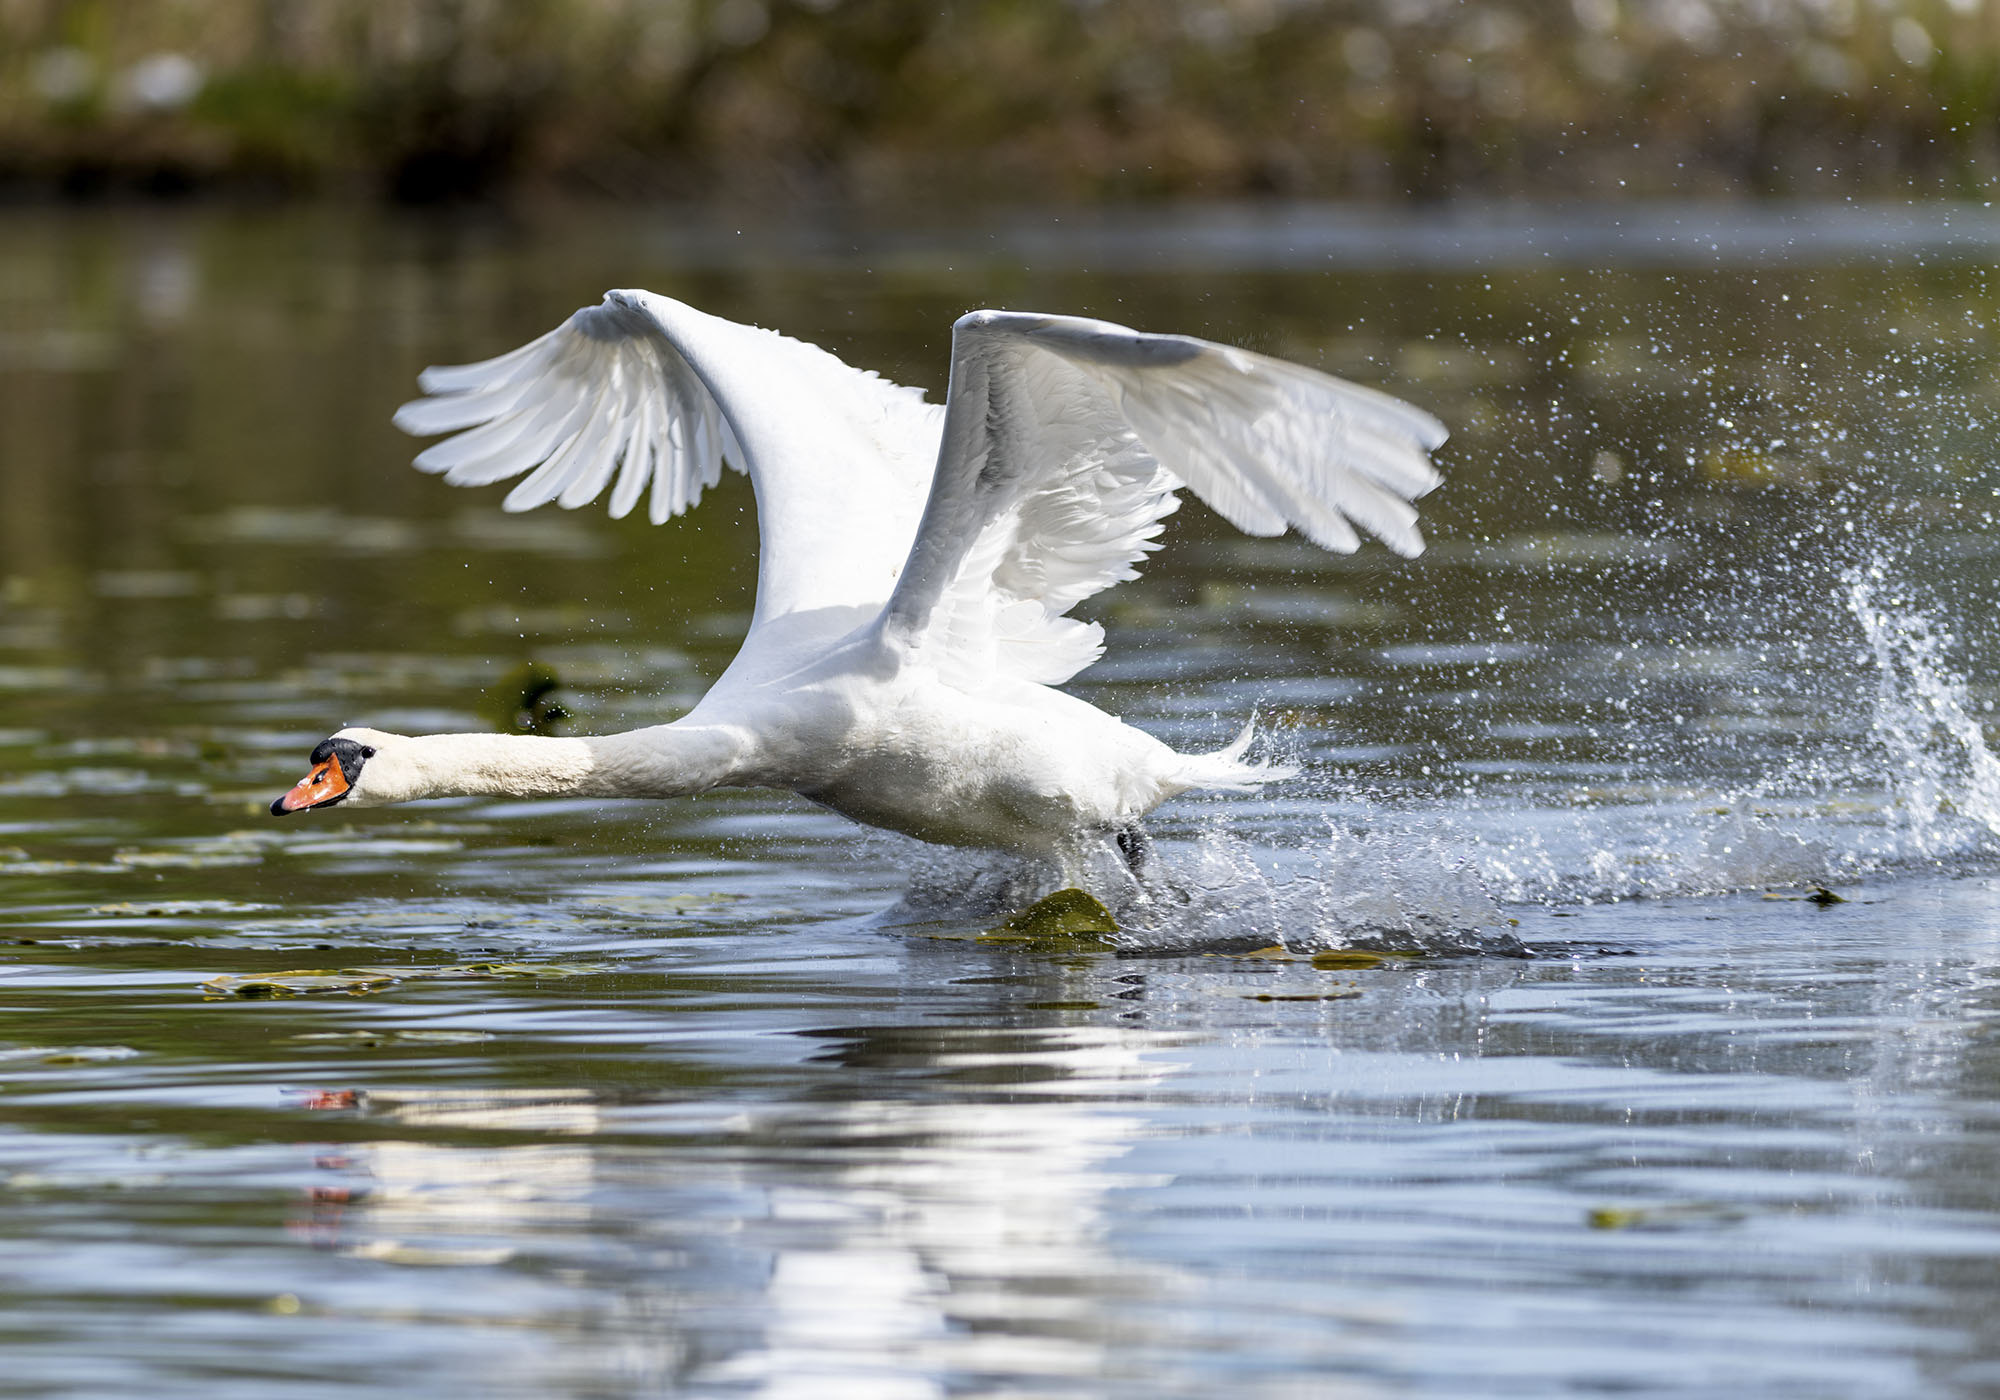 Take-off vid Råstasjön. Svan lyfter från vattnet